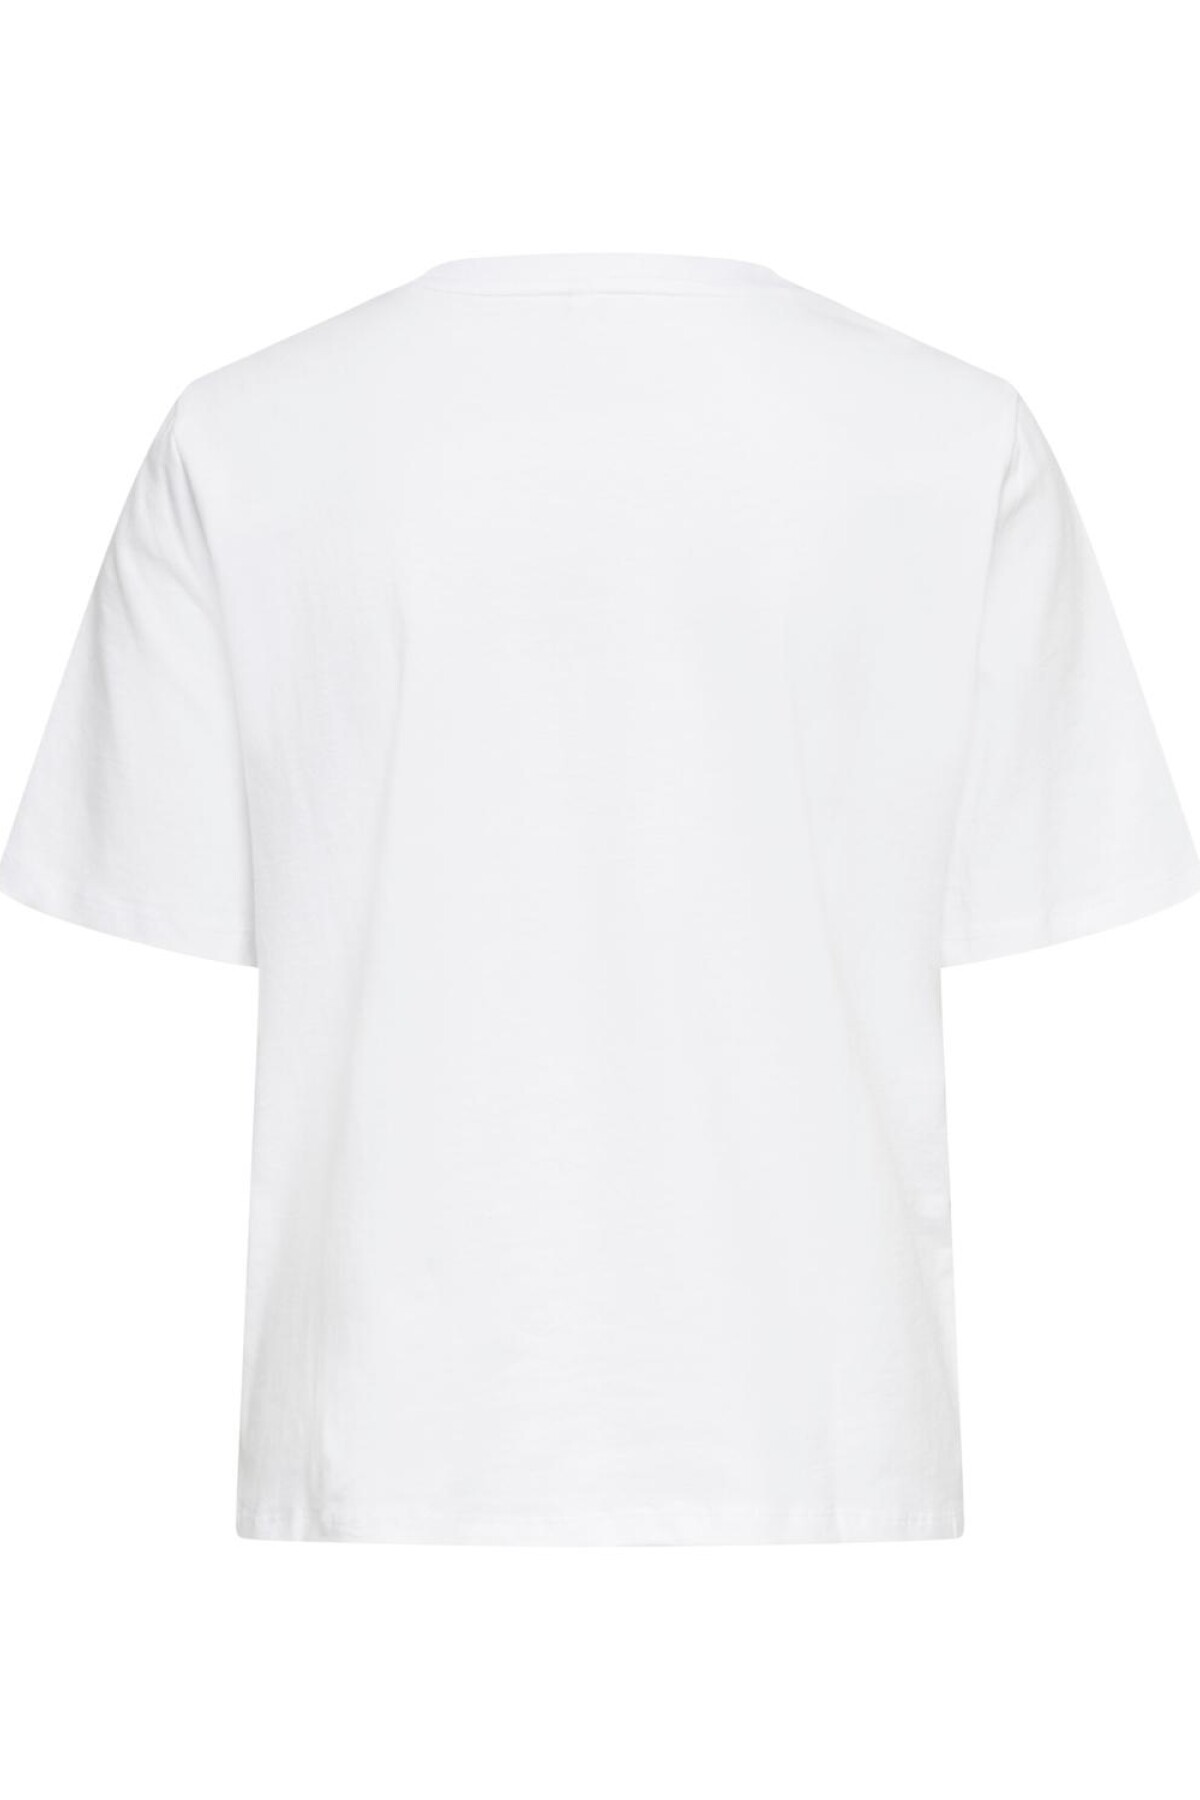 Camiseta Mauve Bright White